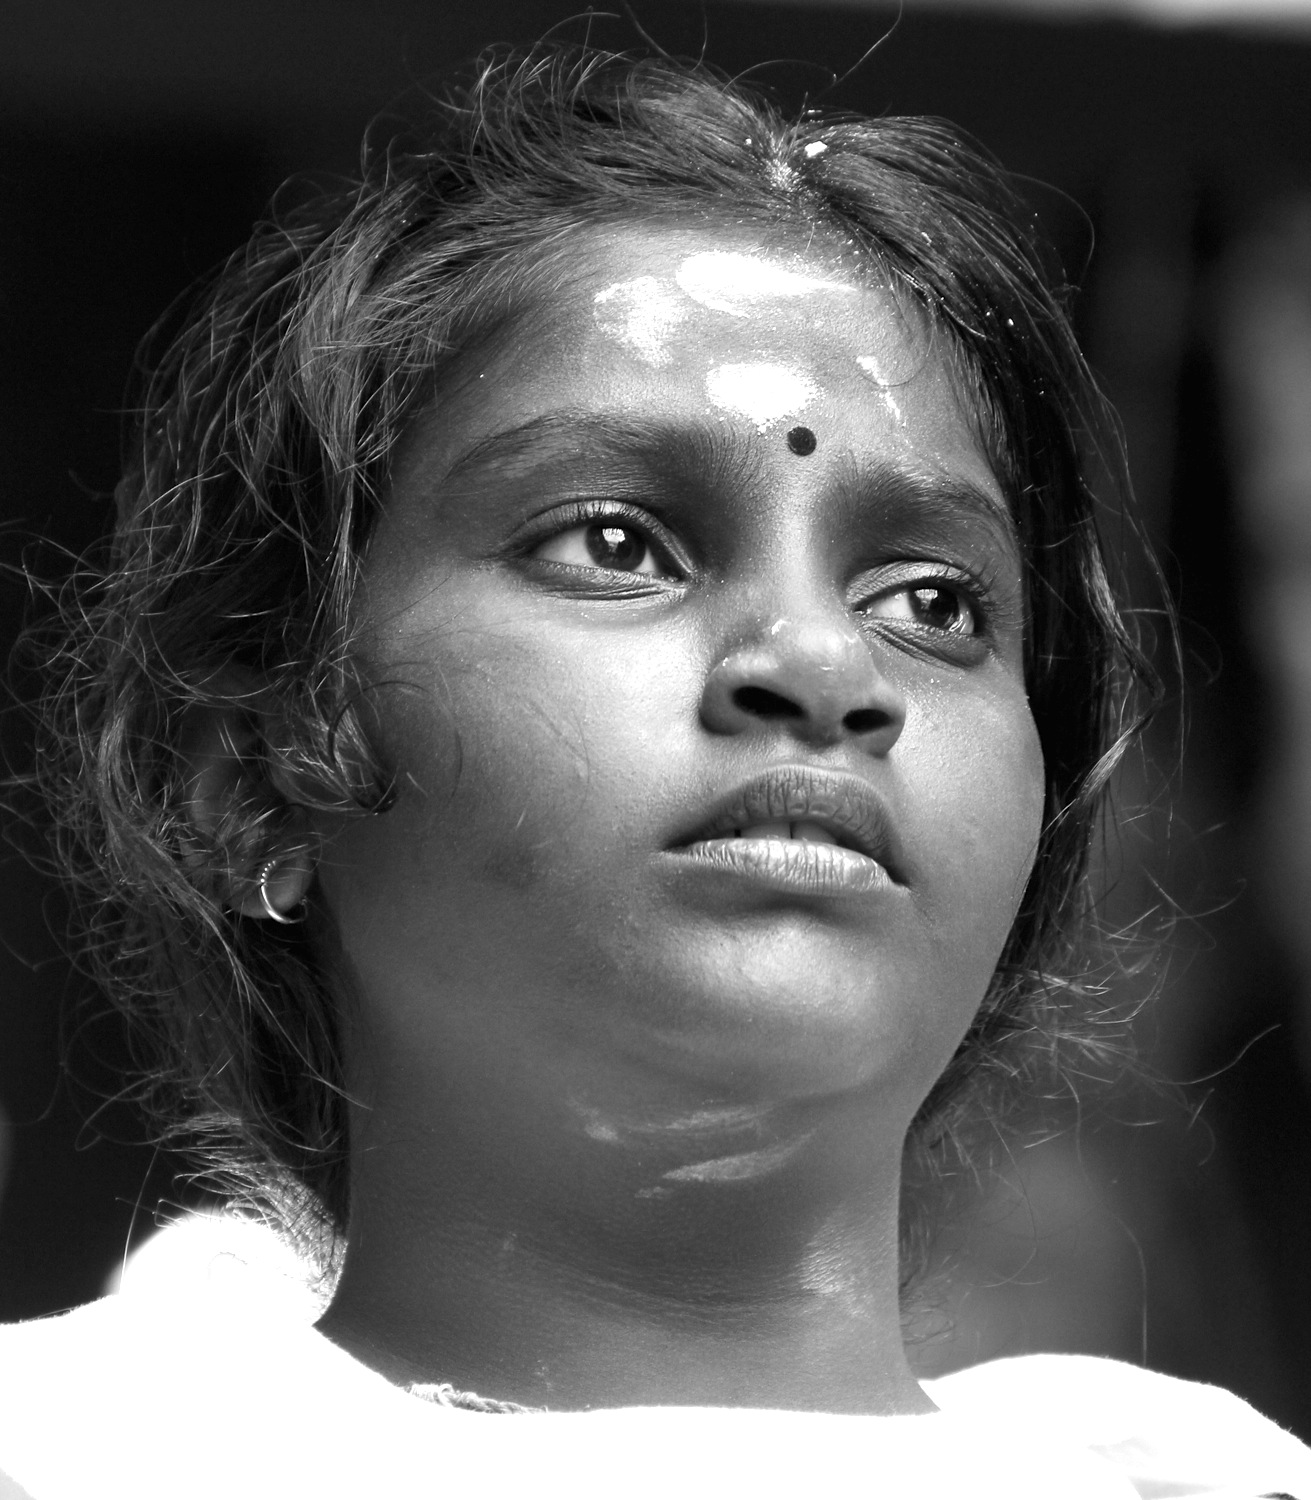 Tamill festival participant